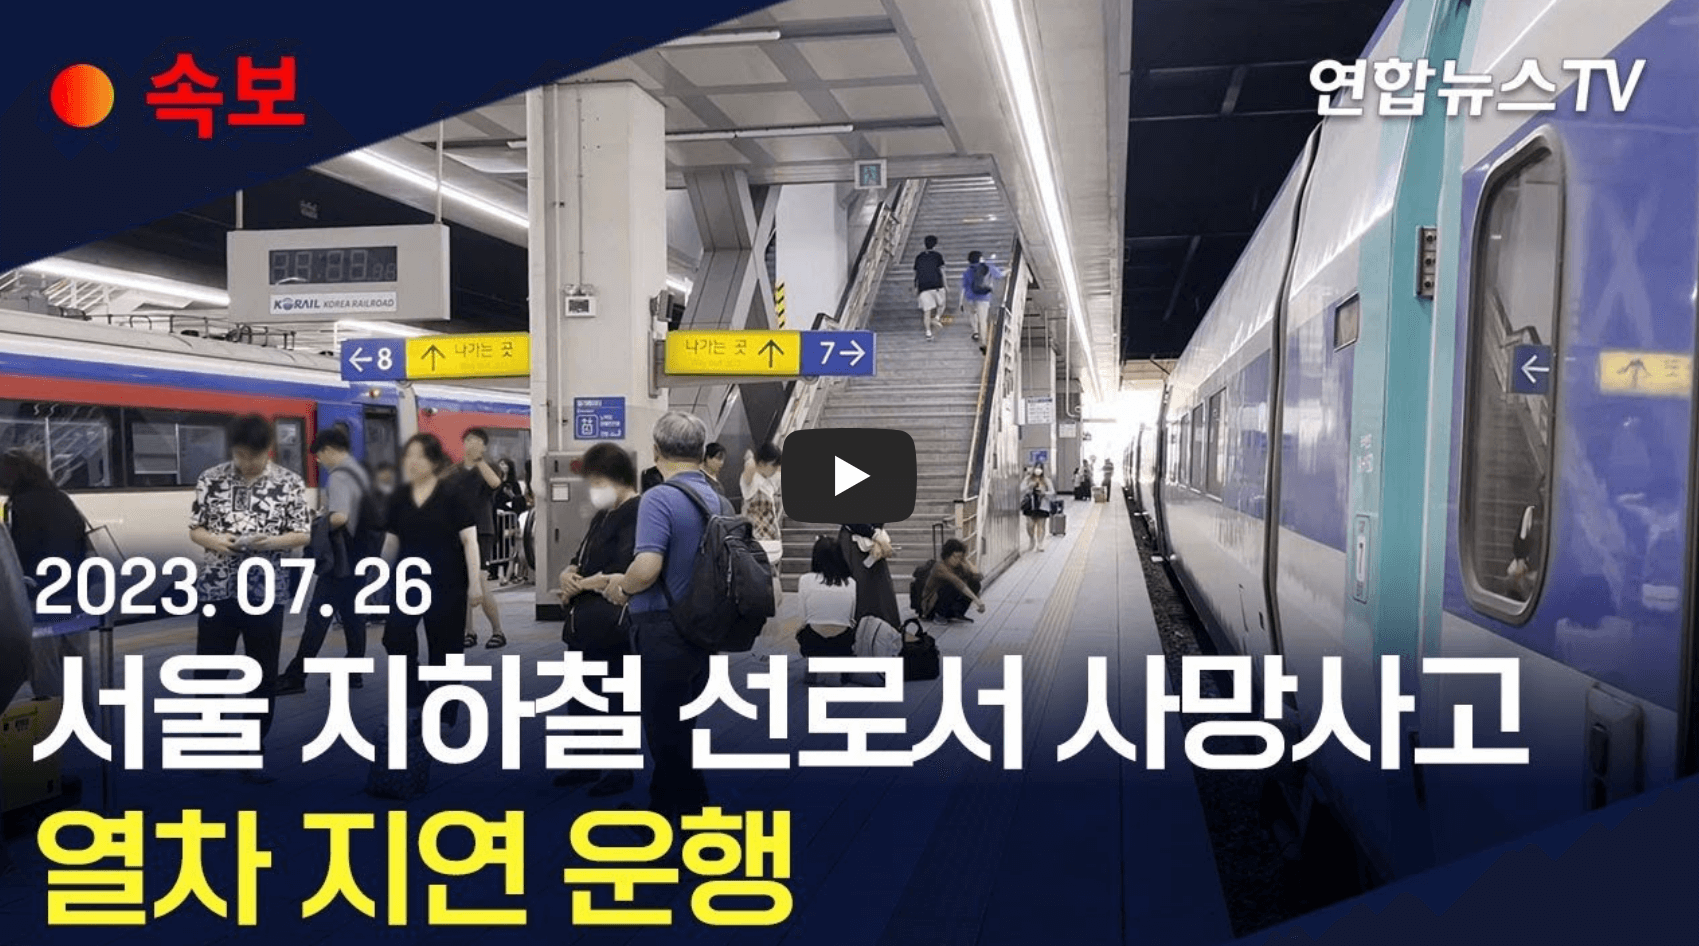 서울 지하철 선로 사고 뉴스 영상 섬네일